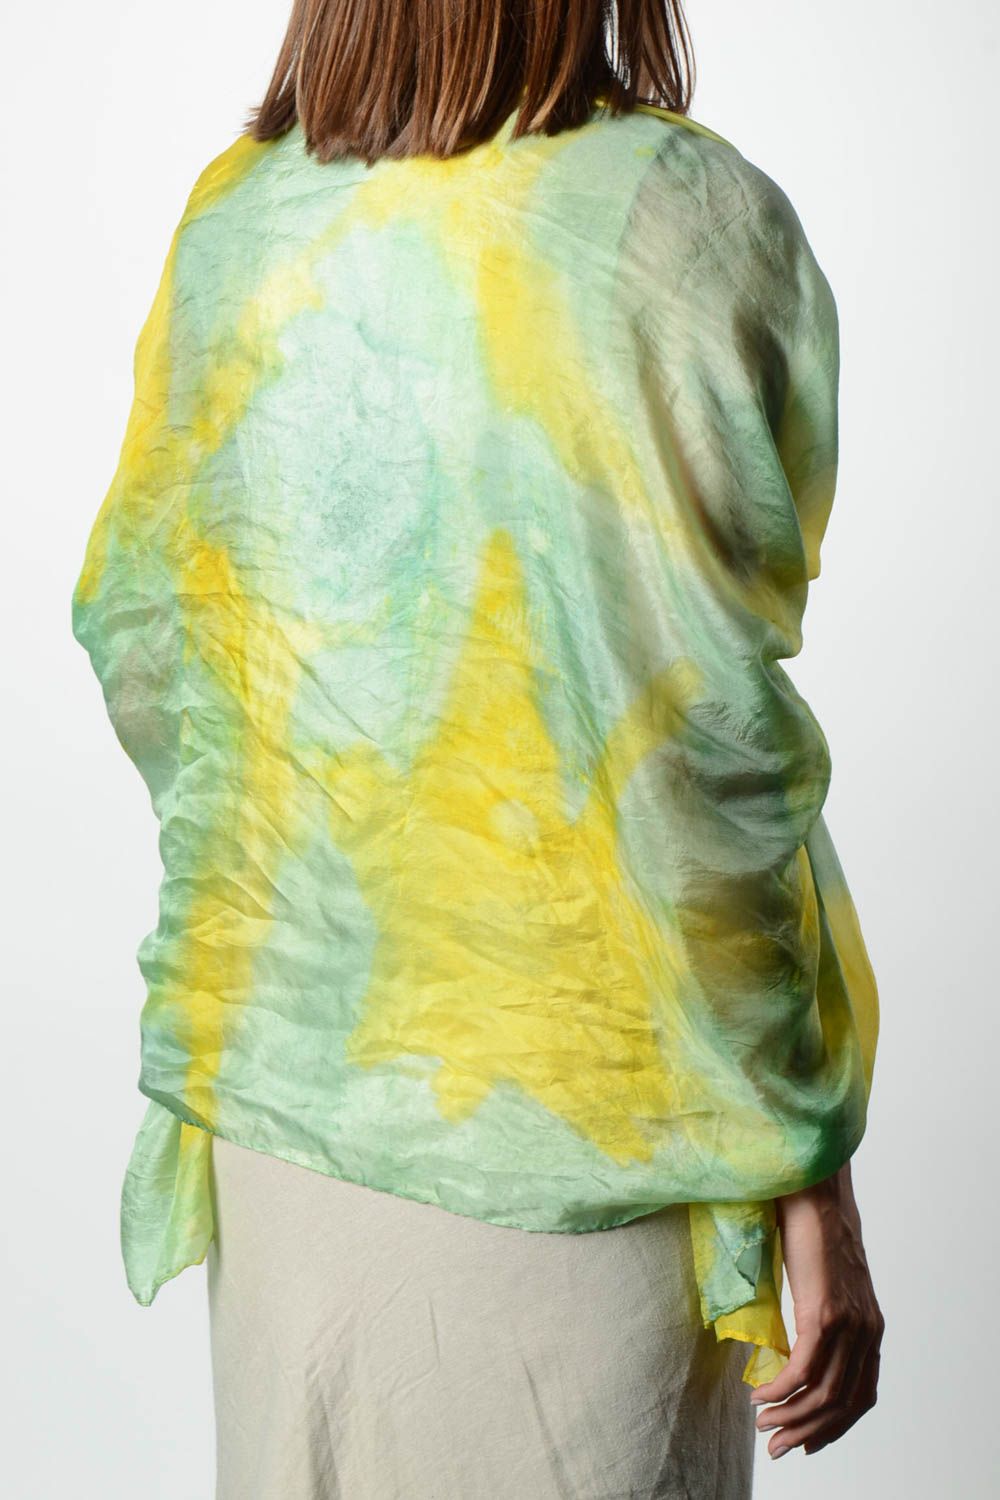 Écharpe soie Accessoire fait main jaune vert Cadeau femme original avec peinture photo 2